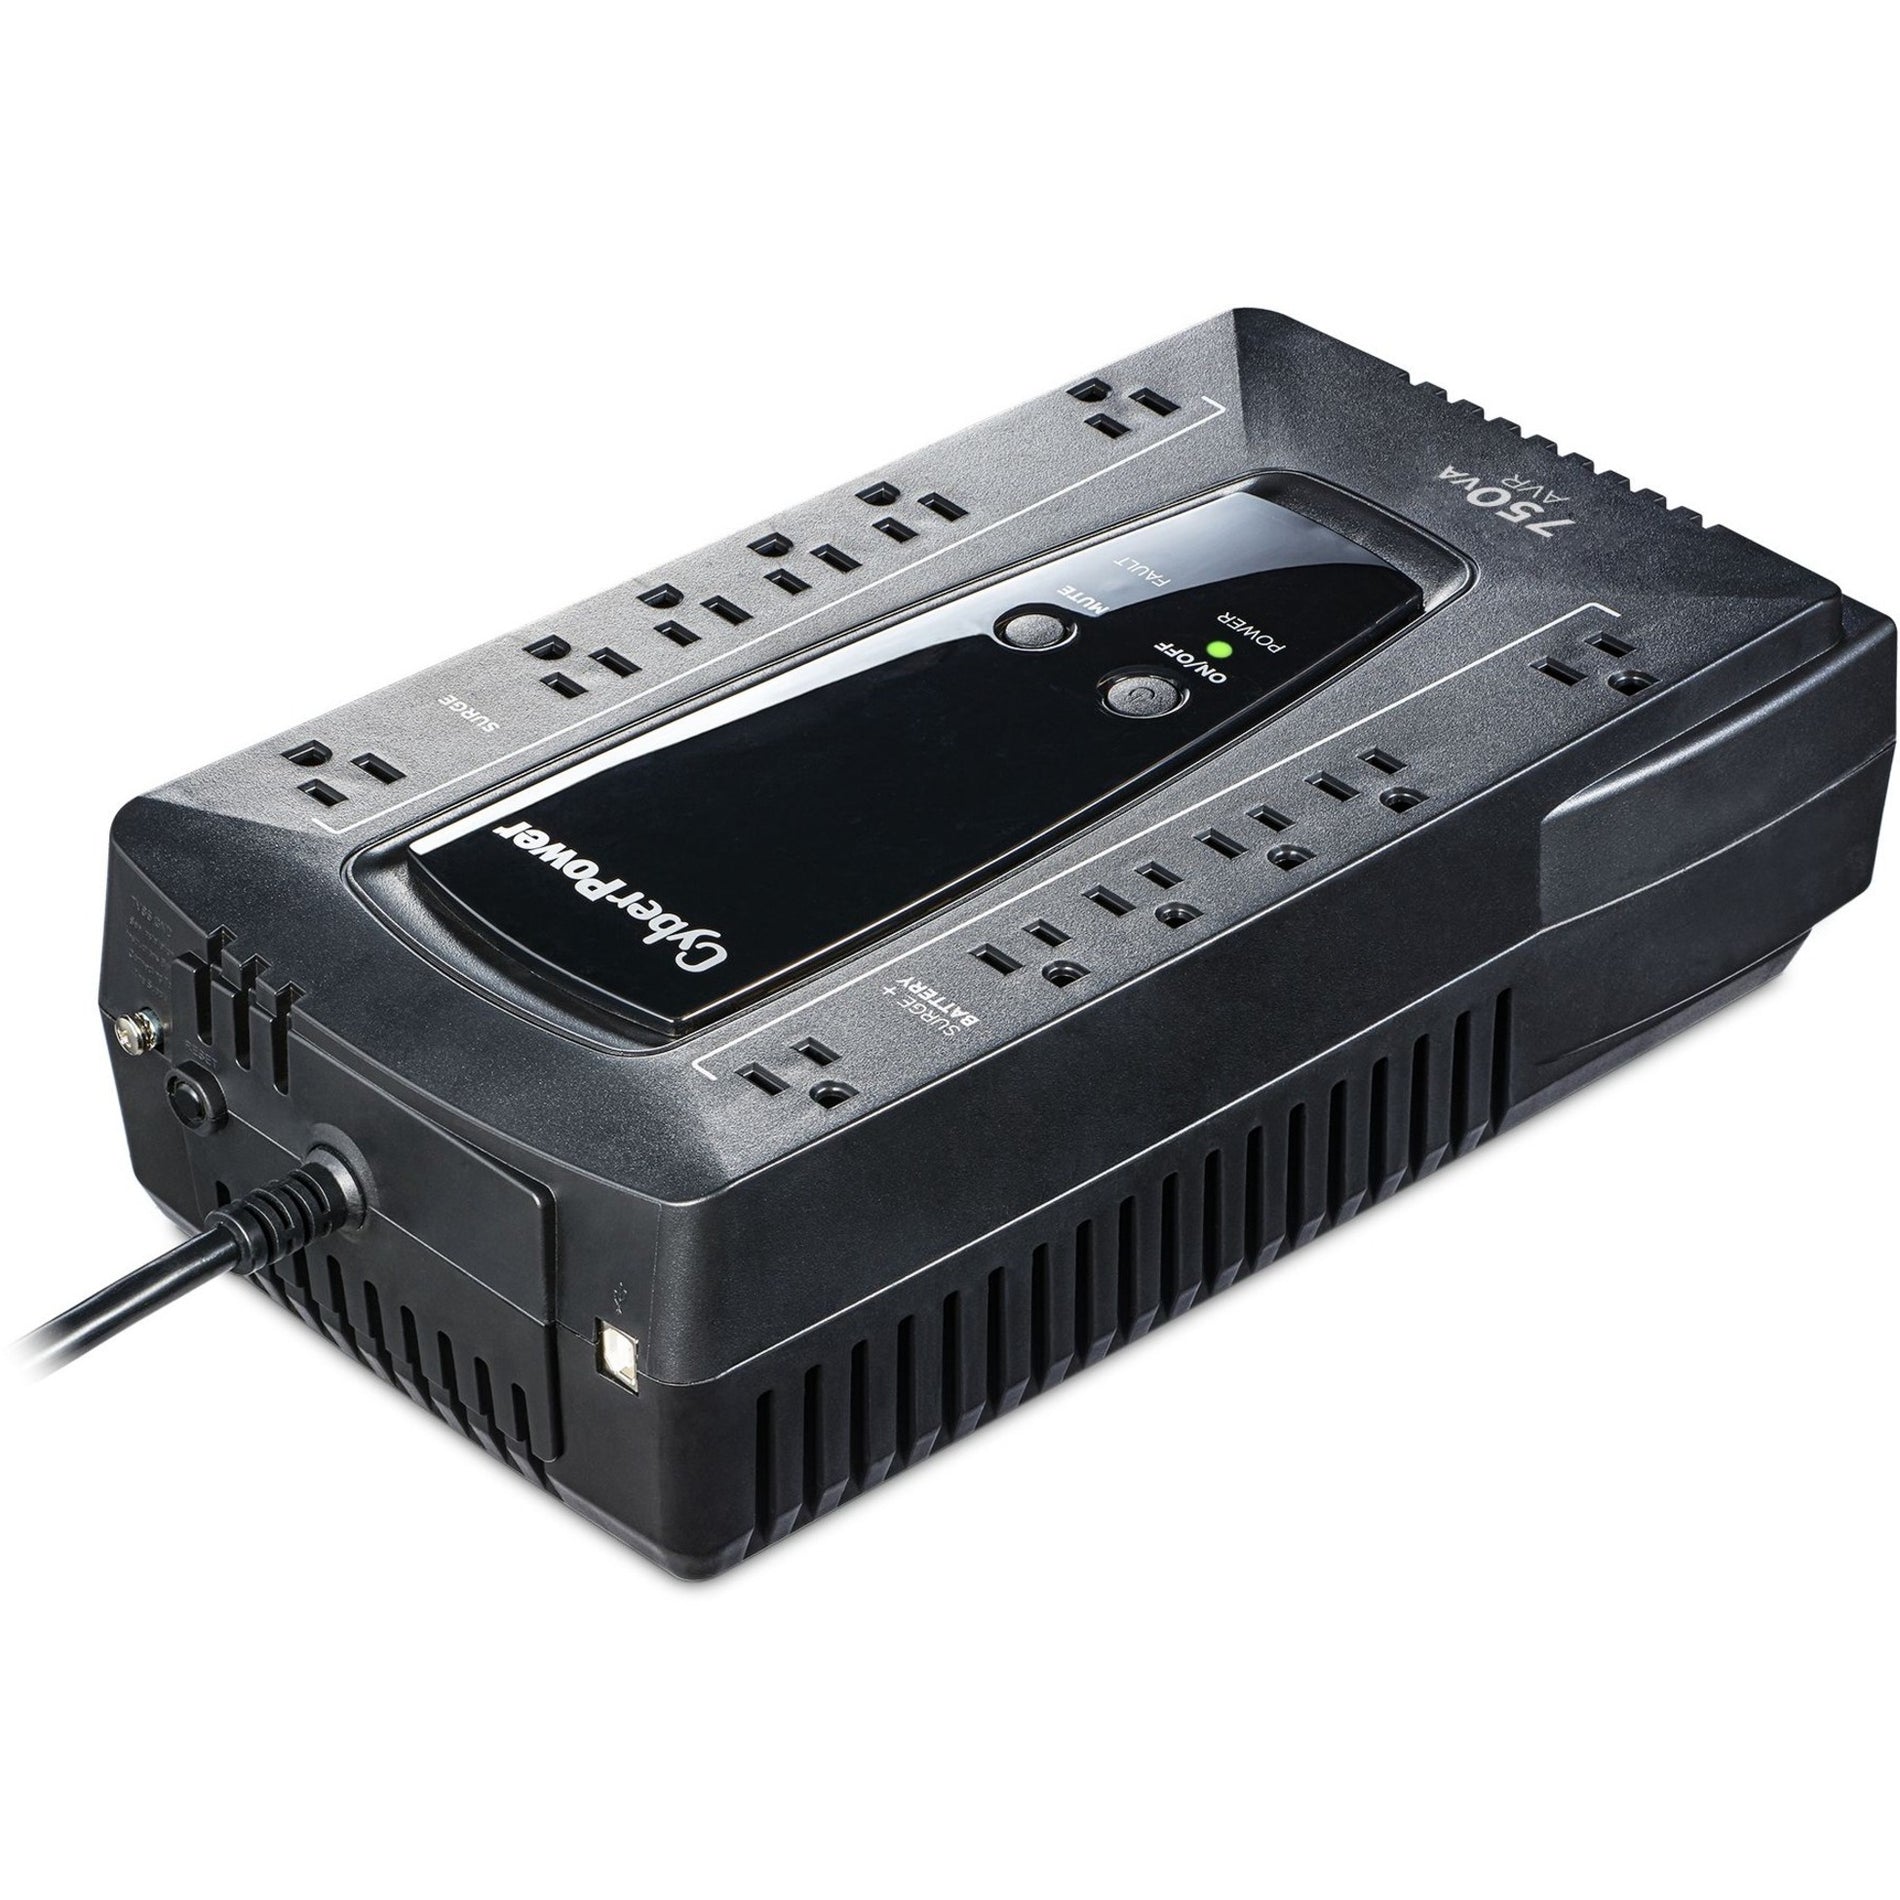 CyberPower AVRG900U Serie AVR 900VA 480W UPS de Escritorio con AVR y USB 3 Años de Garantía Alarma de Batería Baja. Marca traducida: Poder Cibernético.